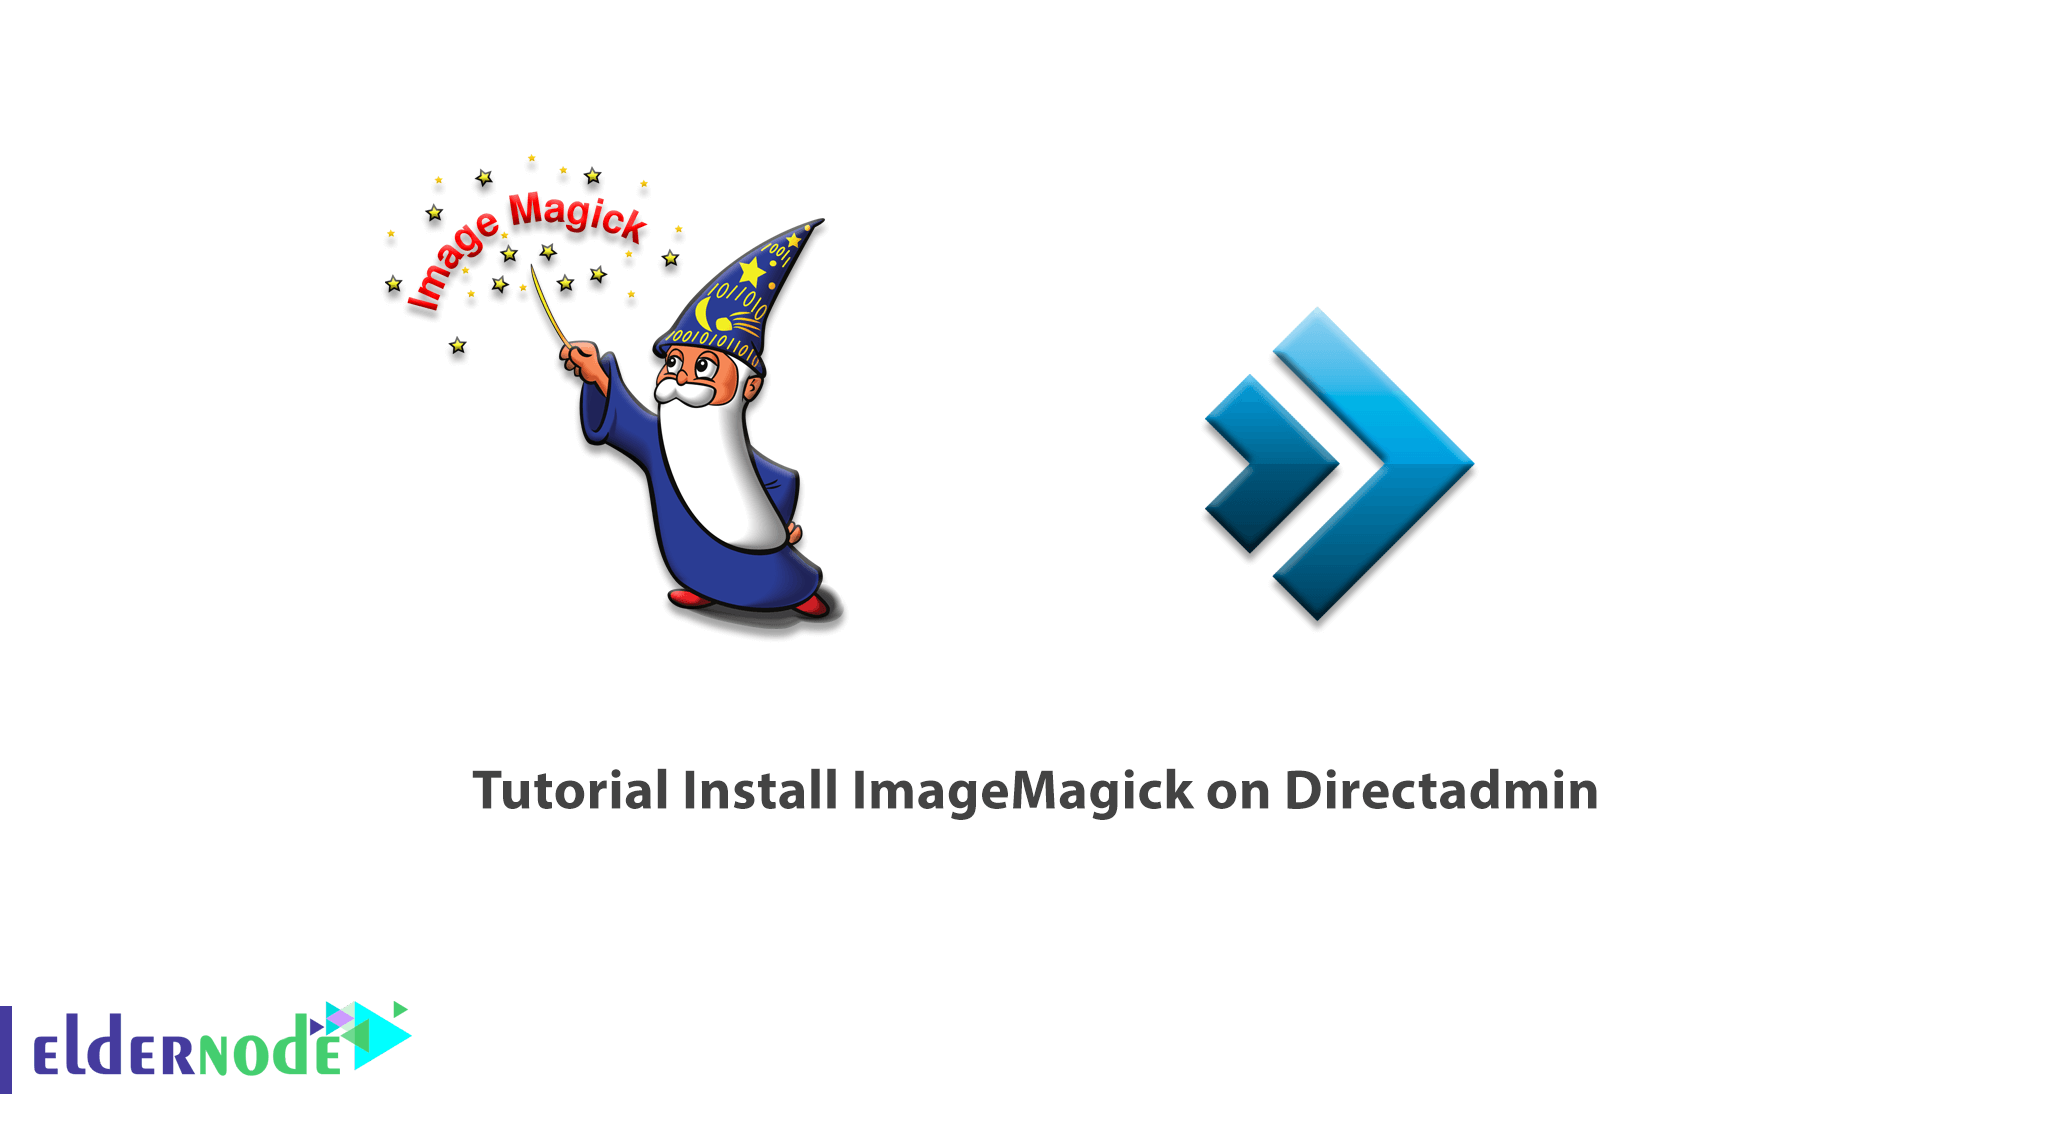 Tutorial Install ImageMagick on Directadmin